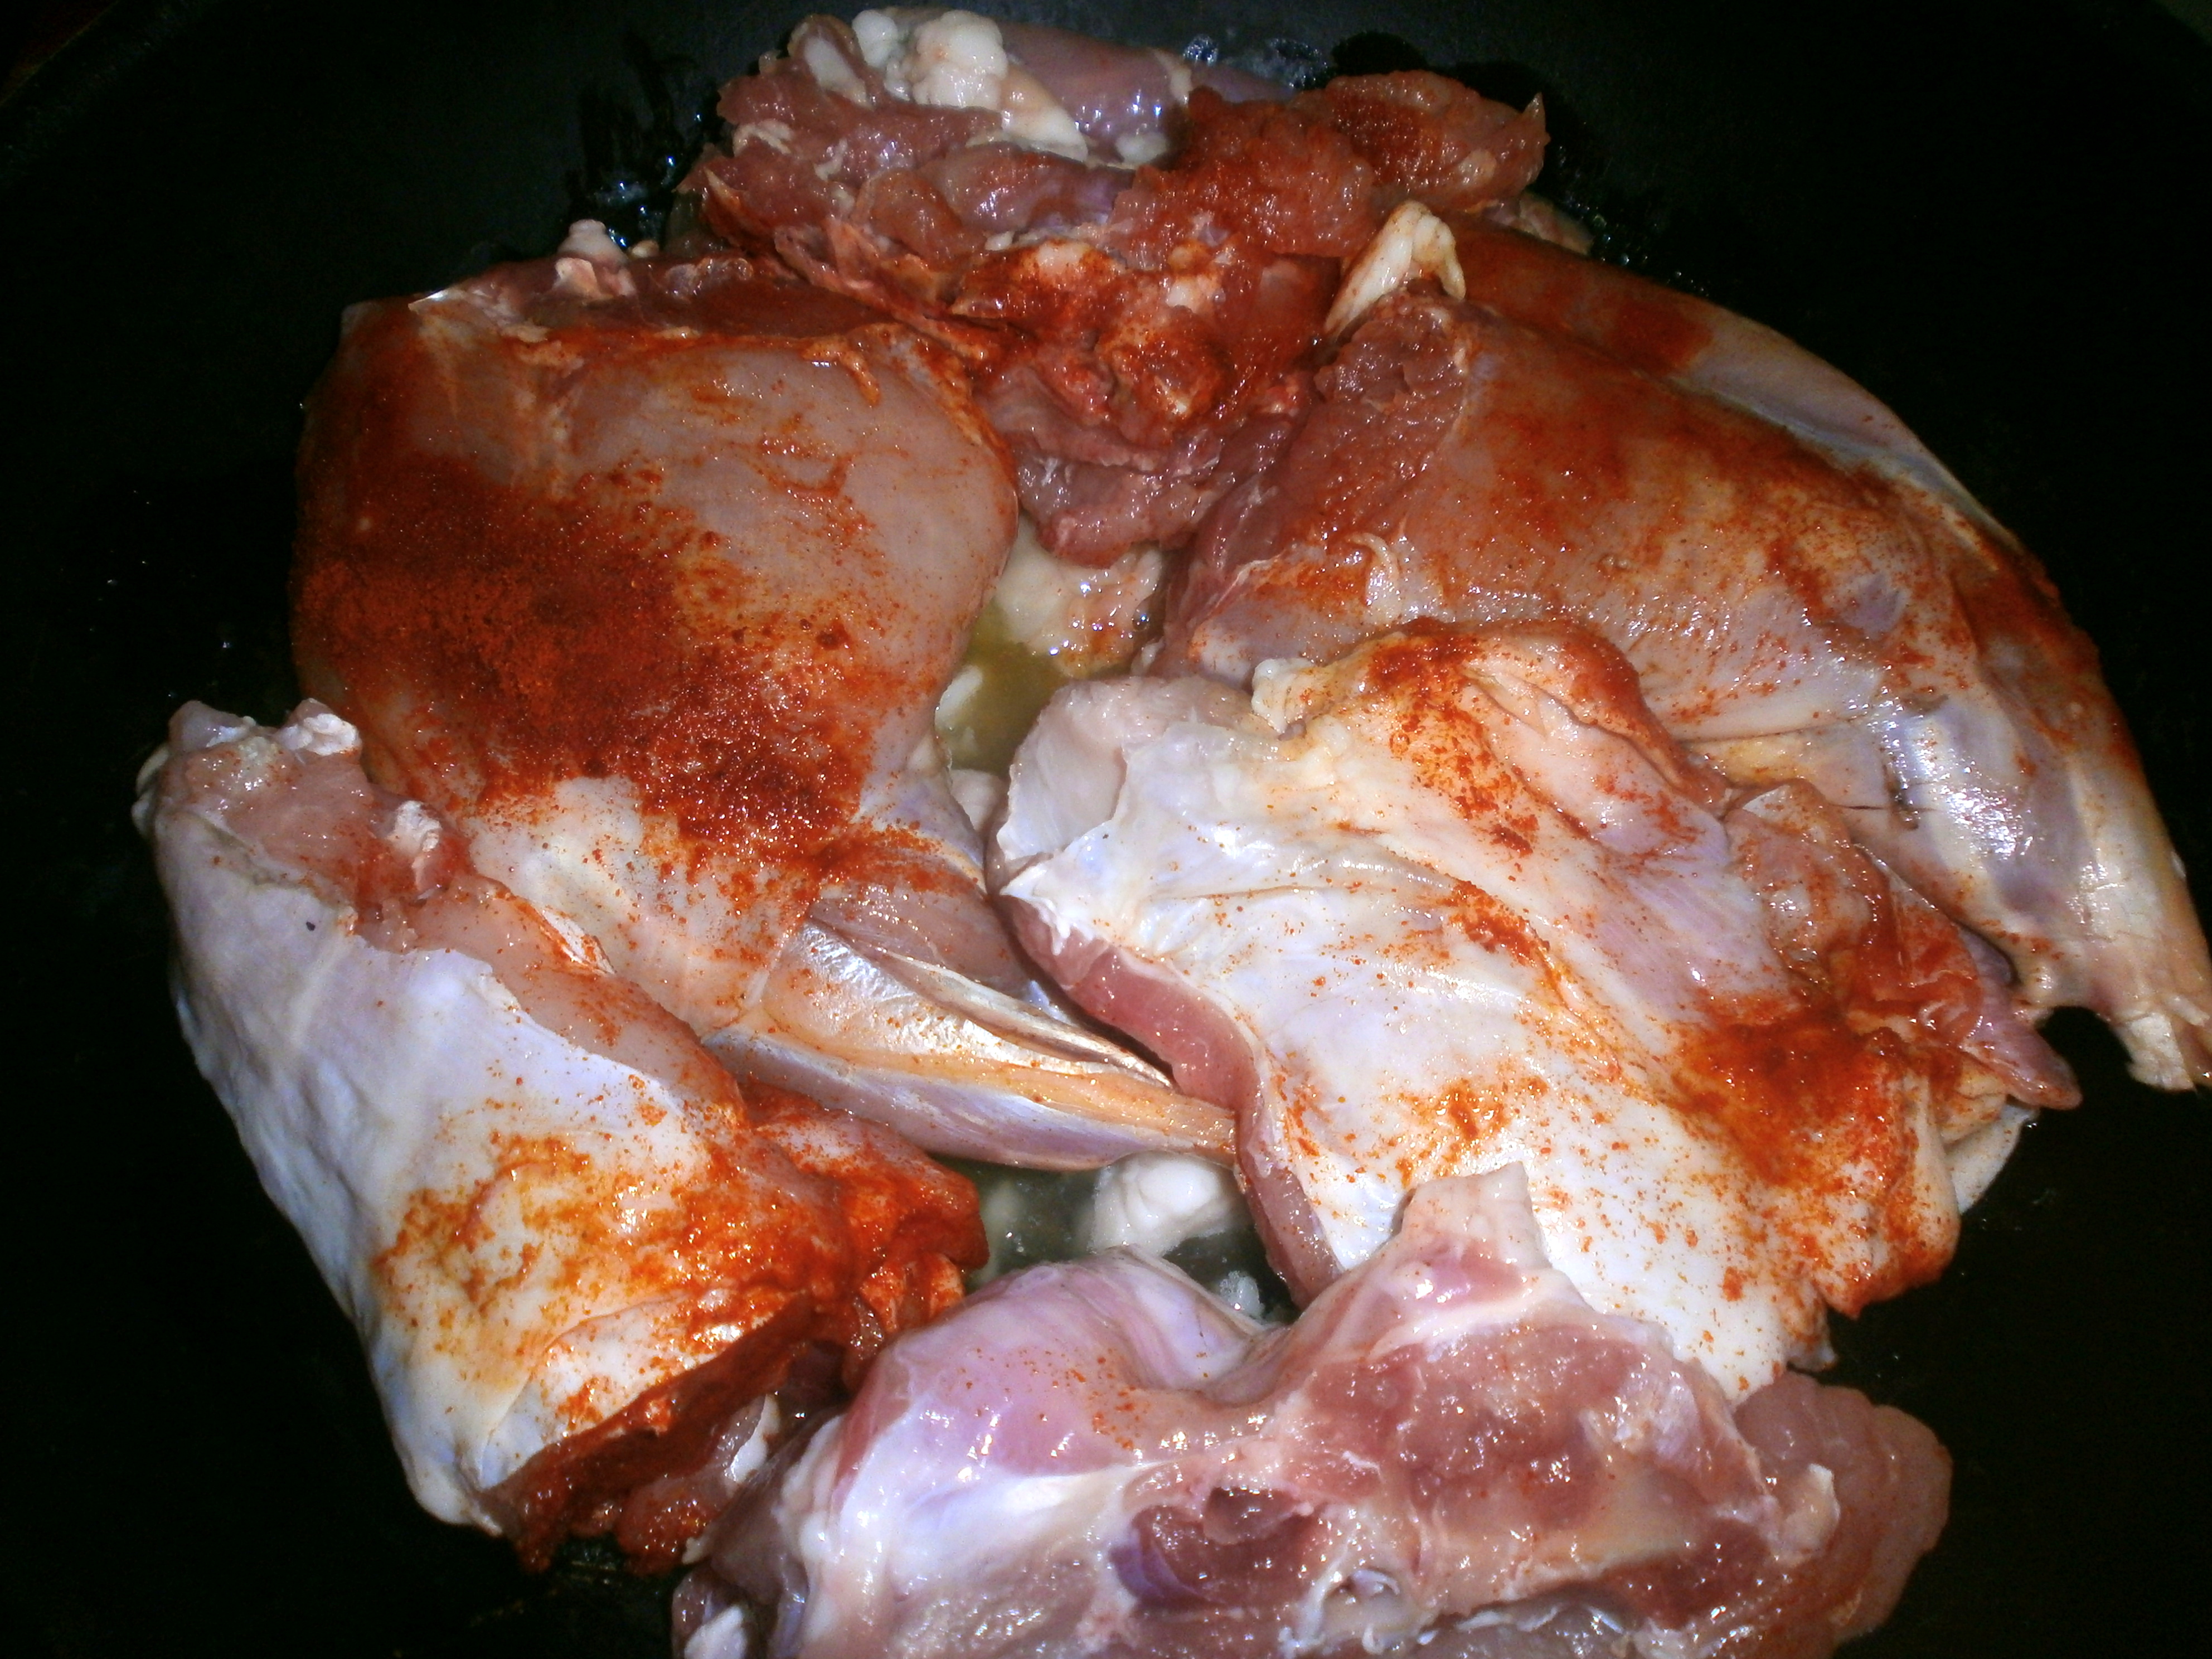 Carne de iepure in sos de rosii cu usturoi servita cu paste